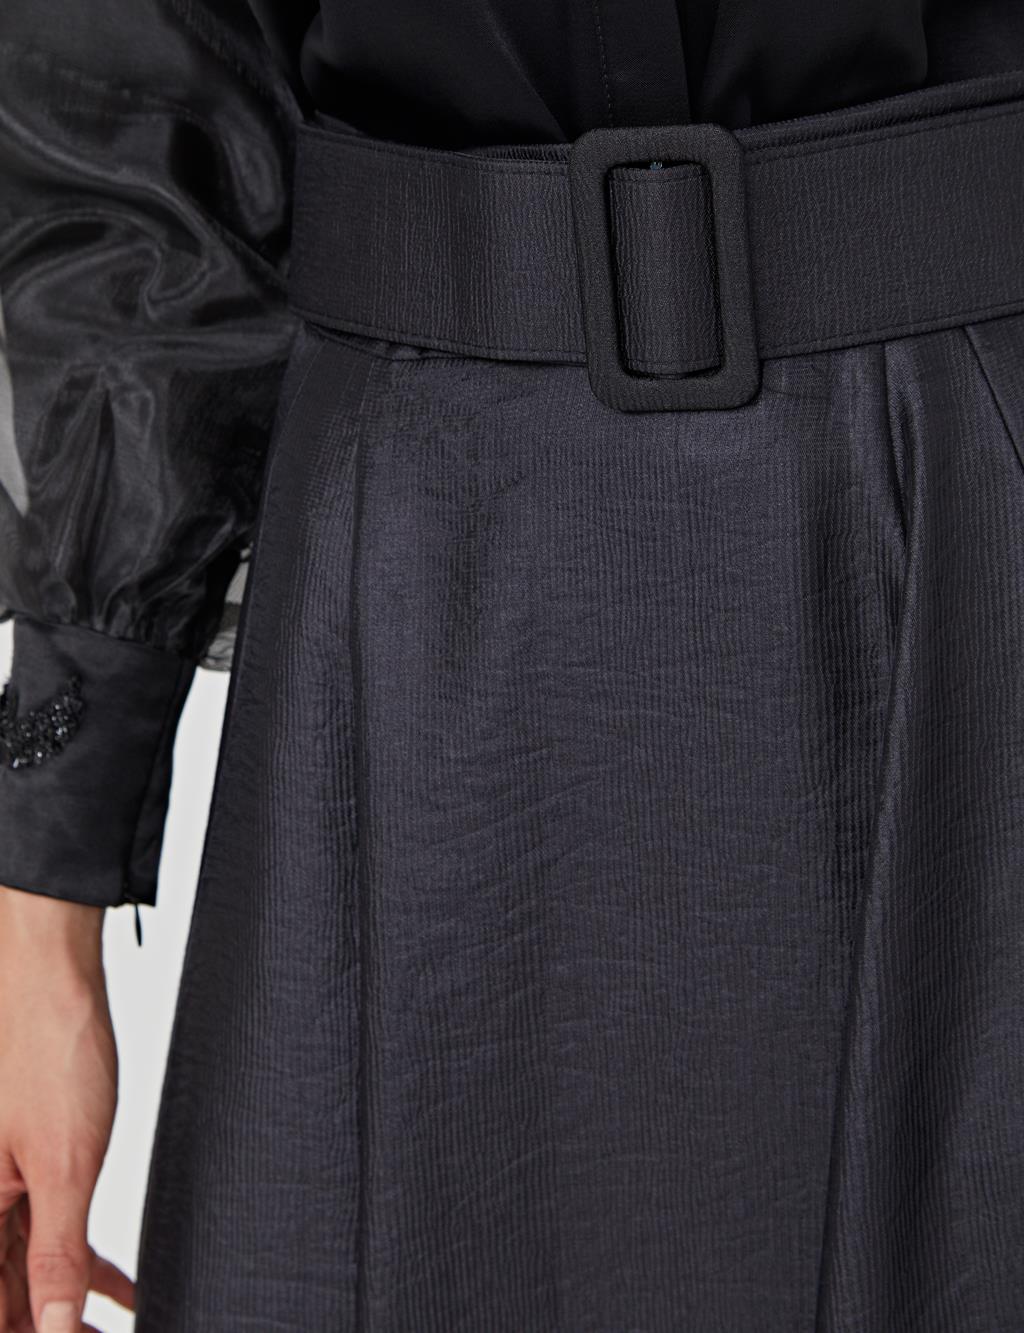 High Waist A-line Skirt A21 12004 Black